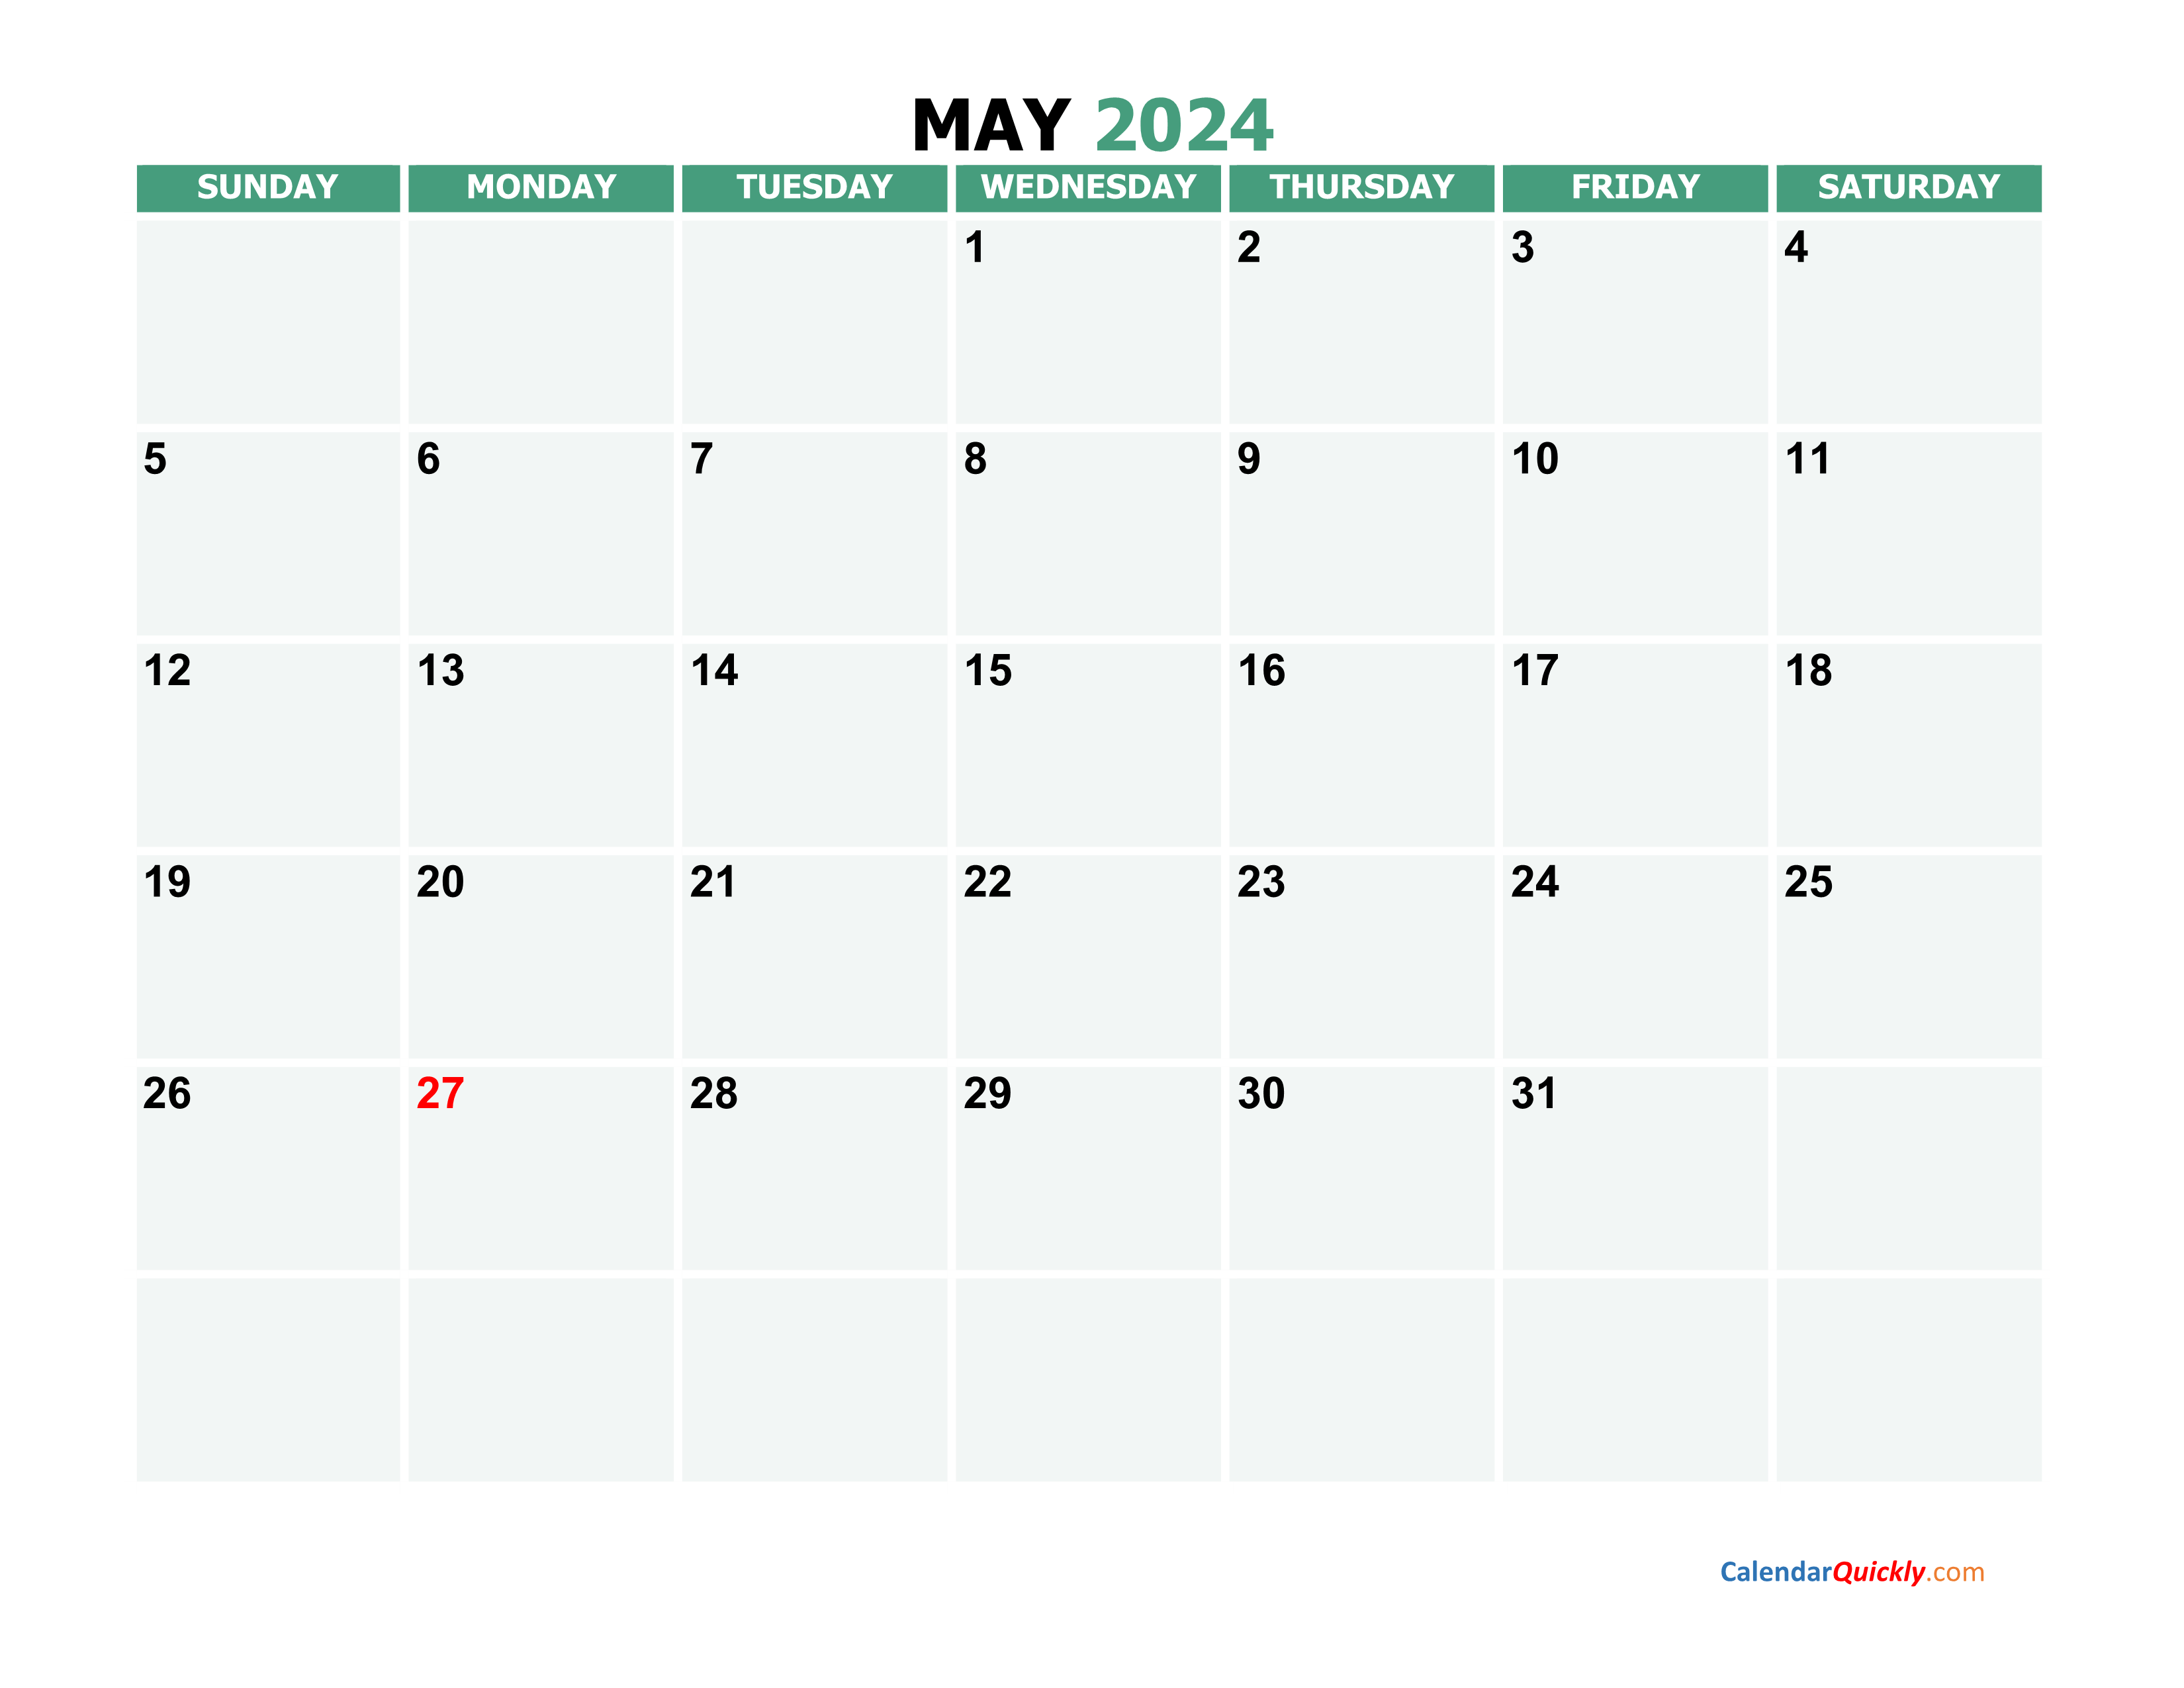 May 2024 Calendars Calendar Quickly